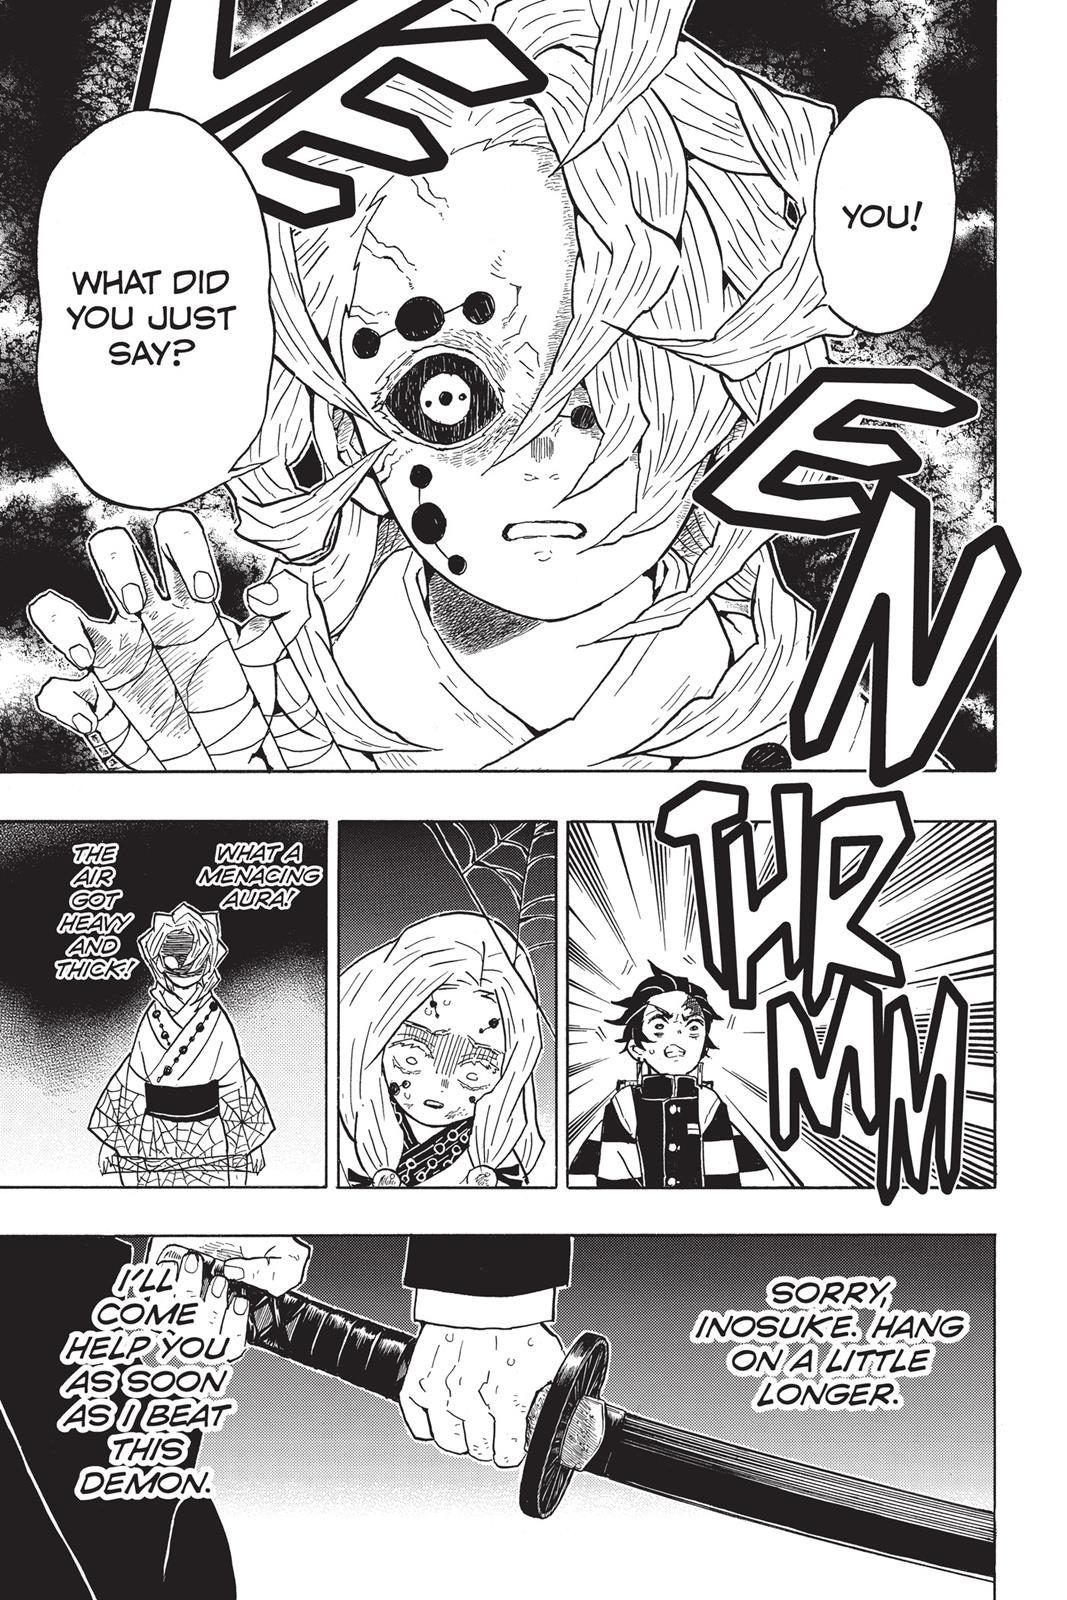 Demon Slayer Manga Manga Chapter - 36 - image 3